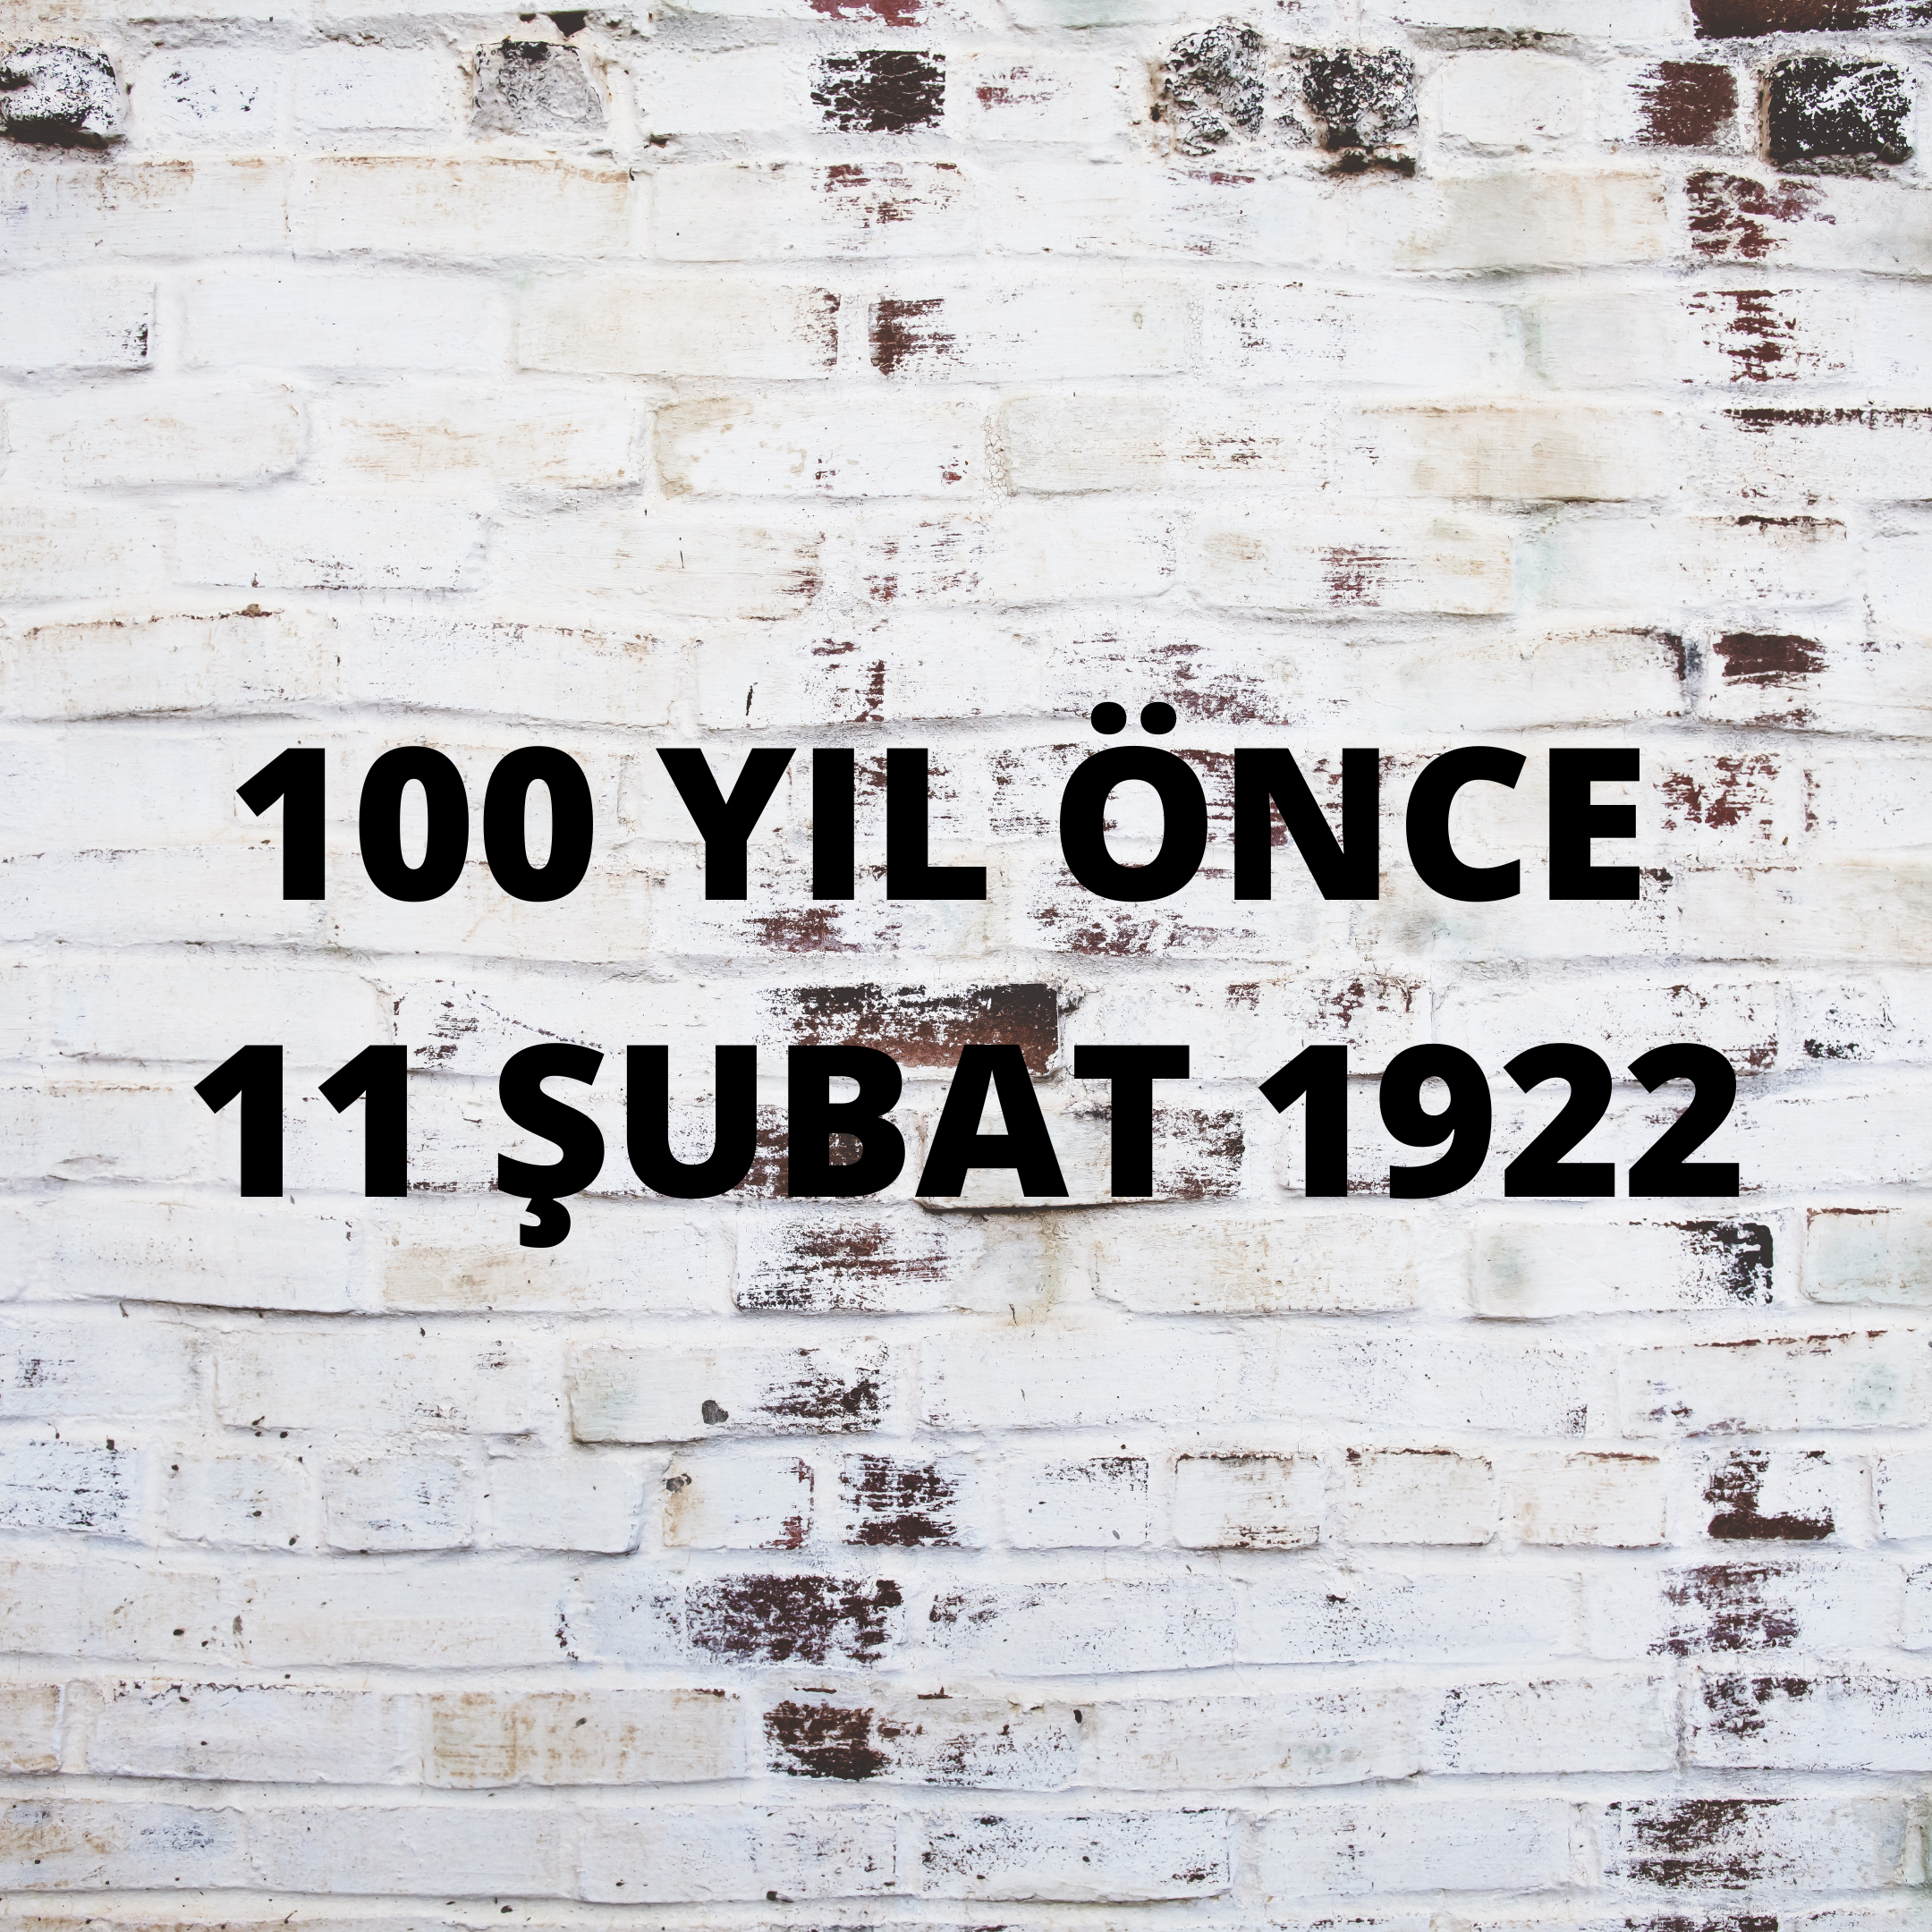 100 YIL ÖNCE 11 ŞUBAT 1922